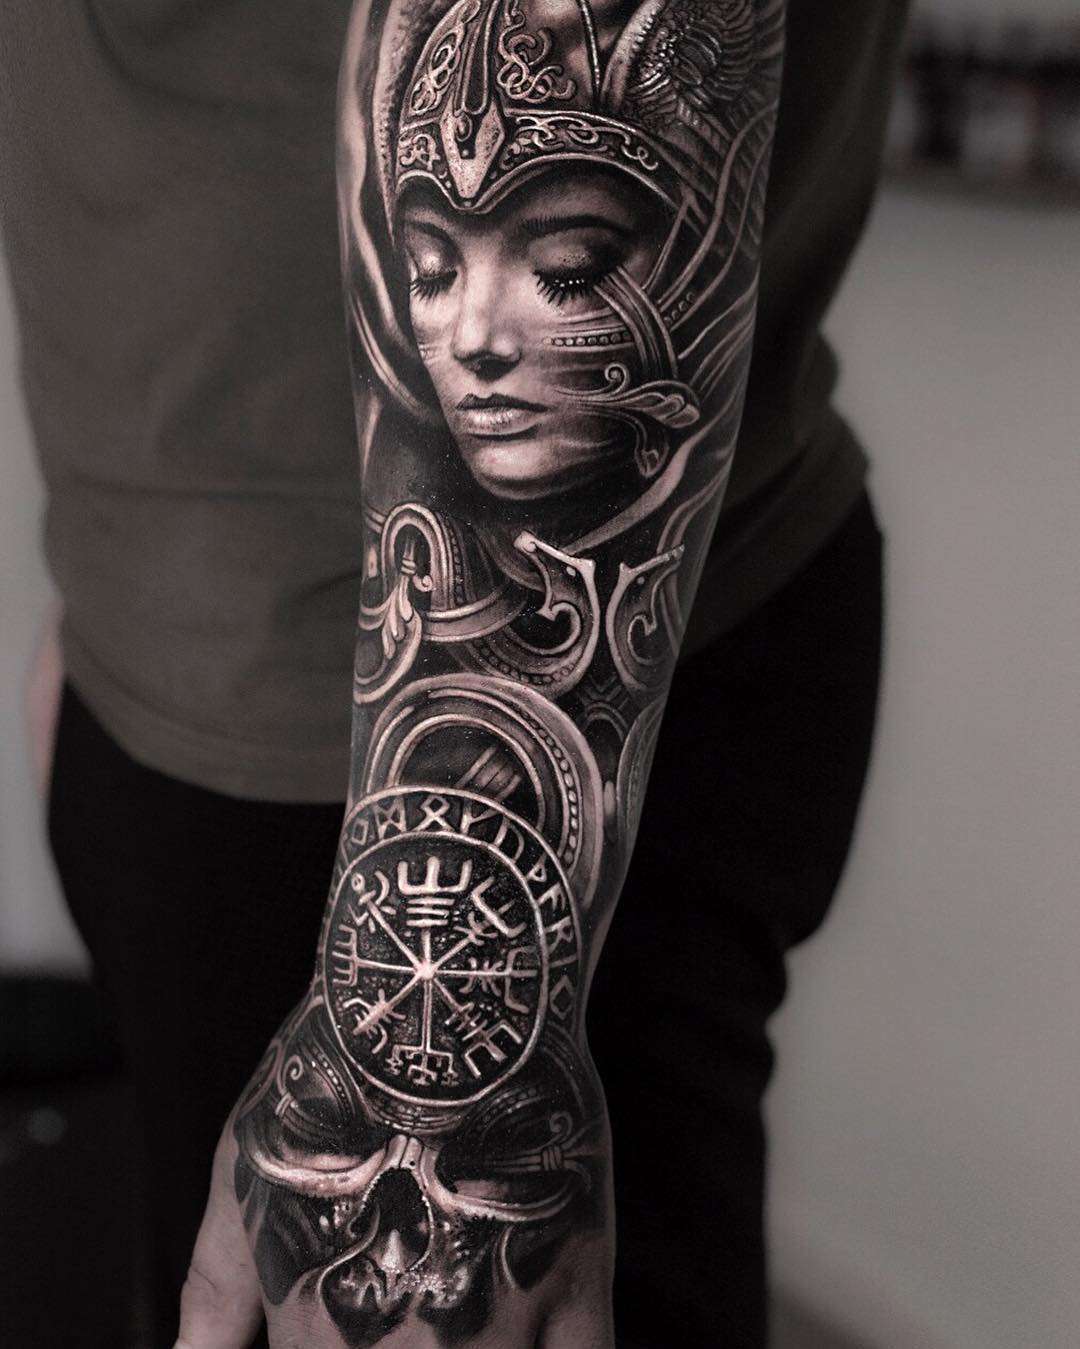 Tatuaggio celtico sul braccio